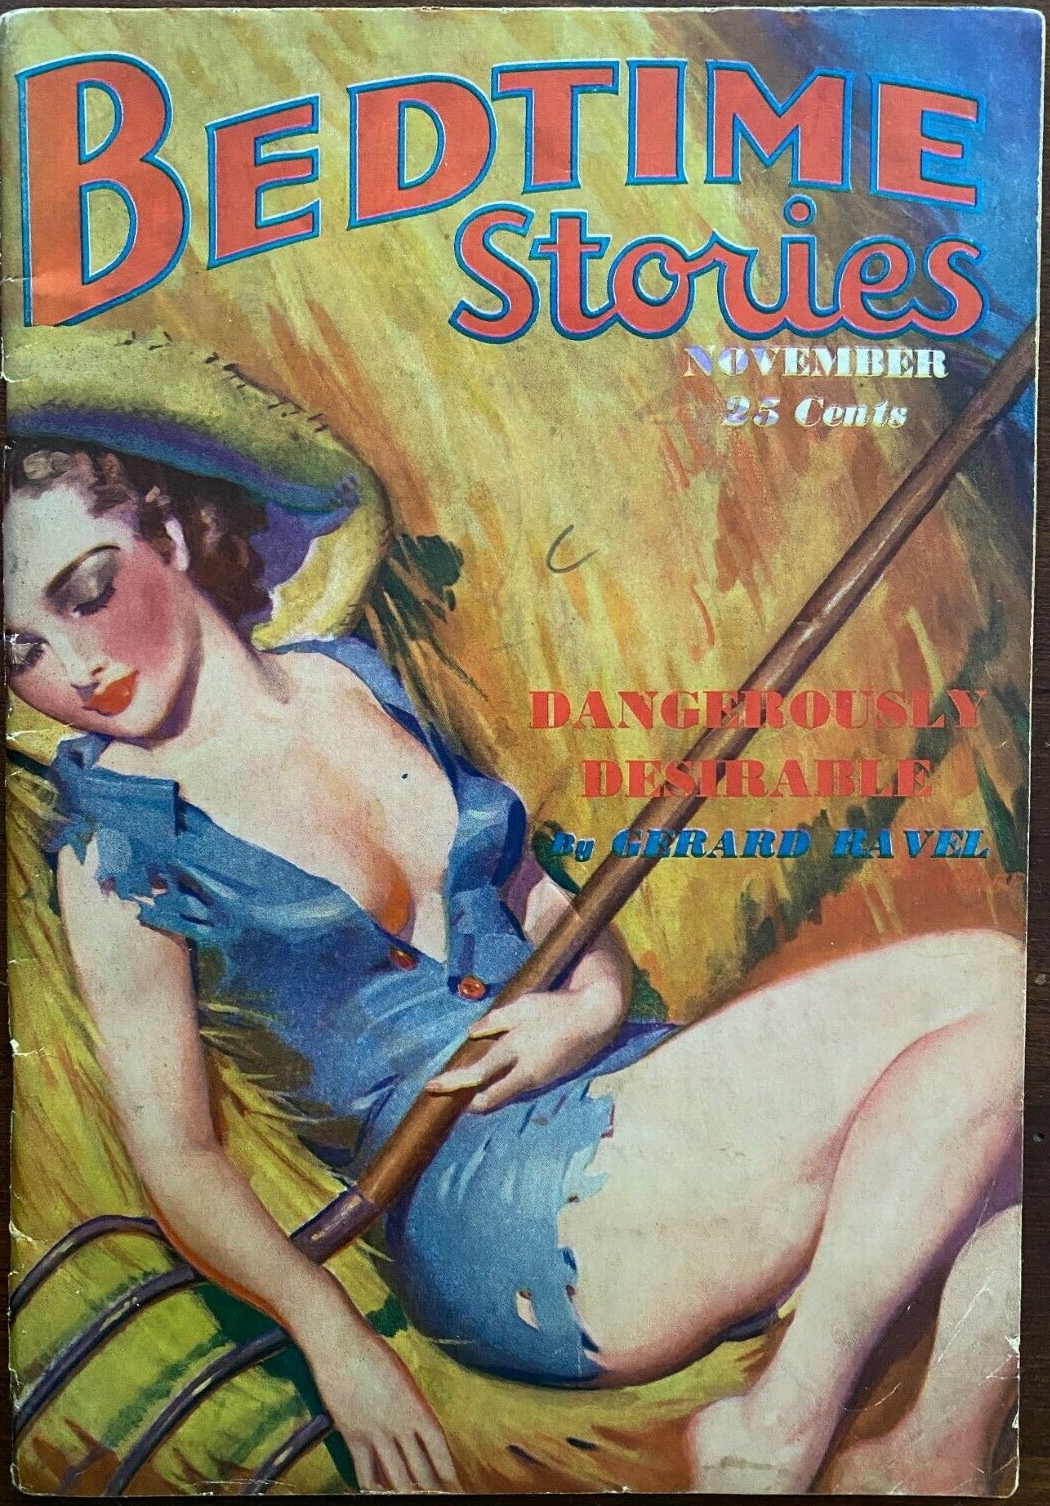 Bedtime Stories - November 1936